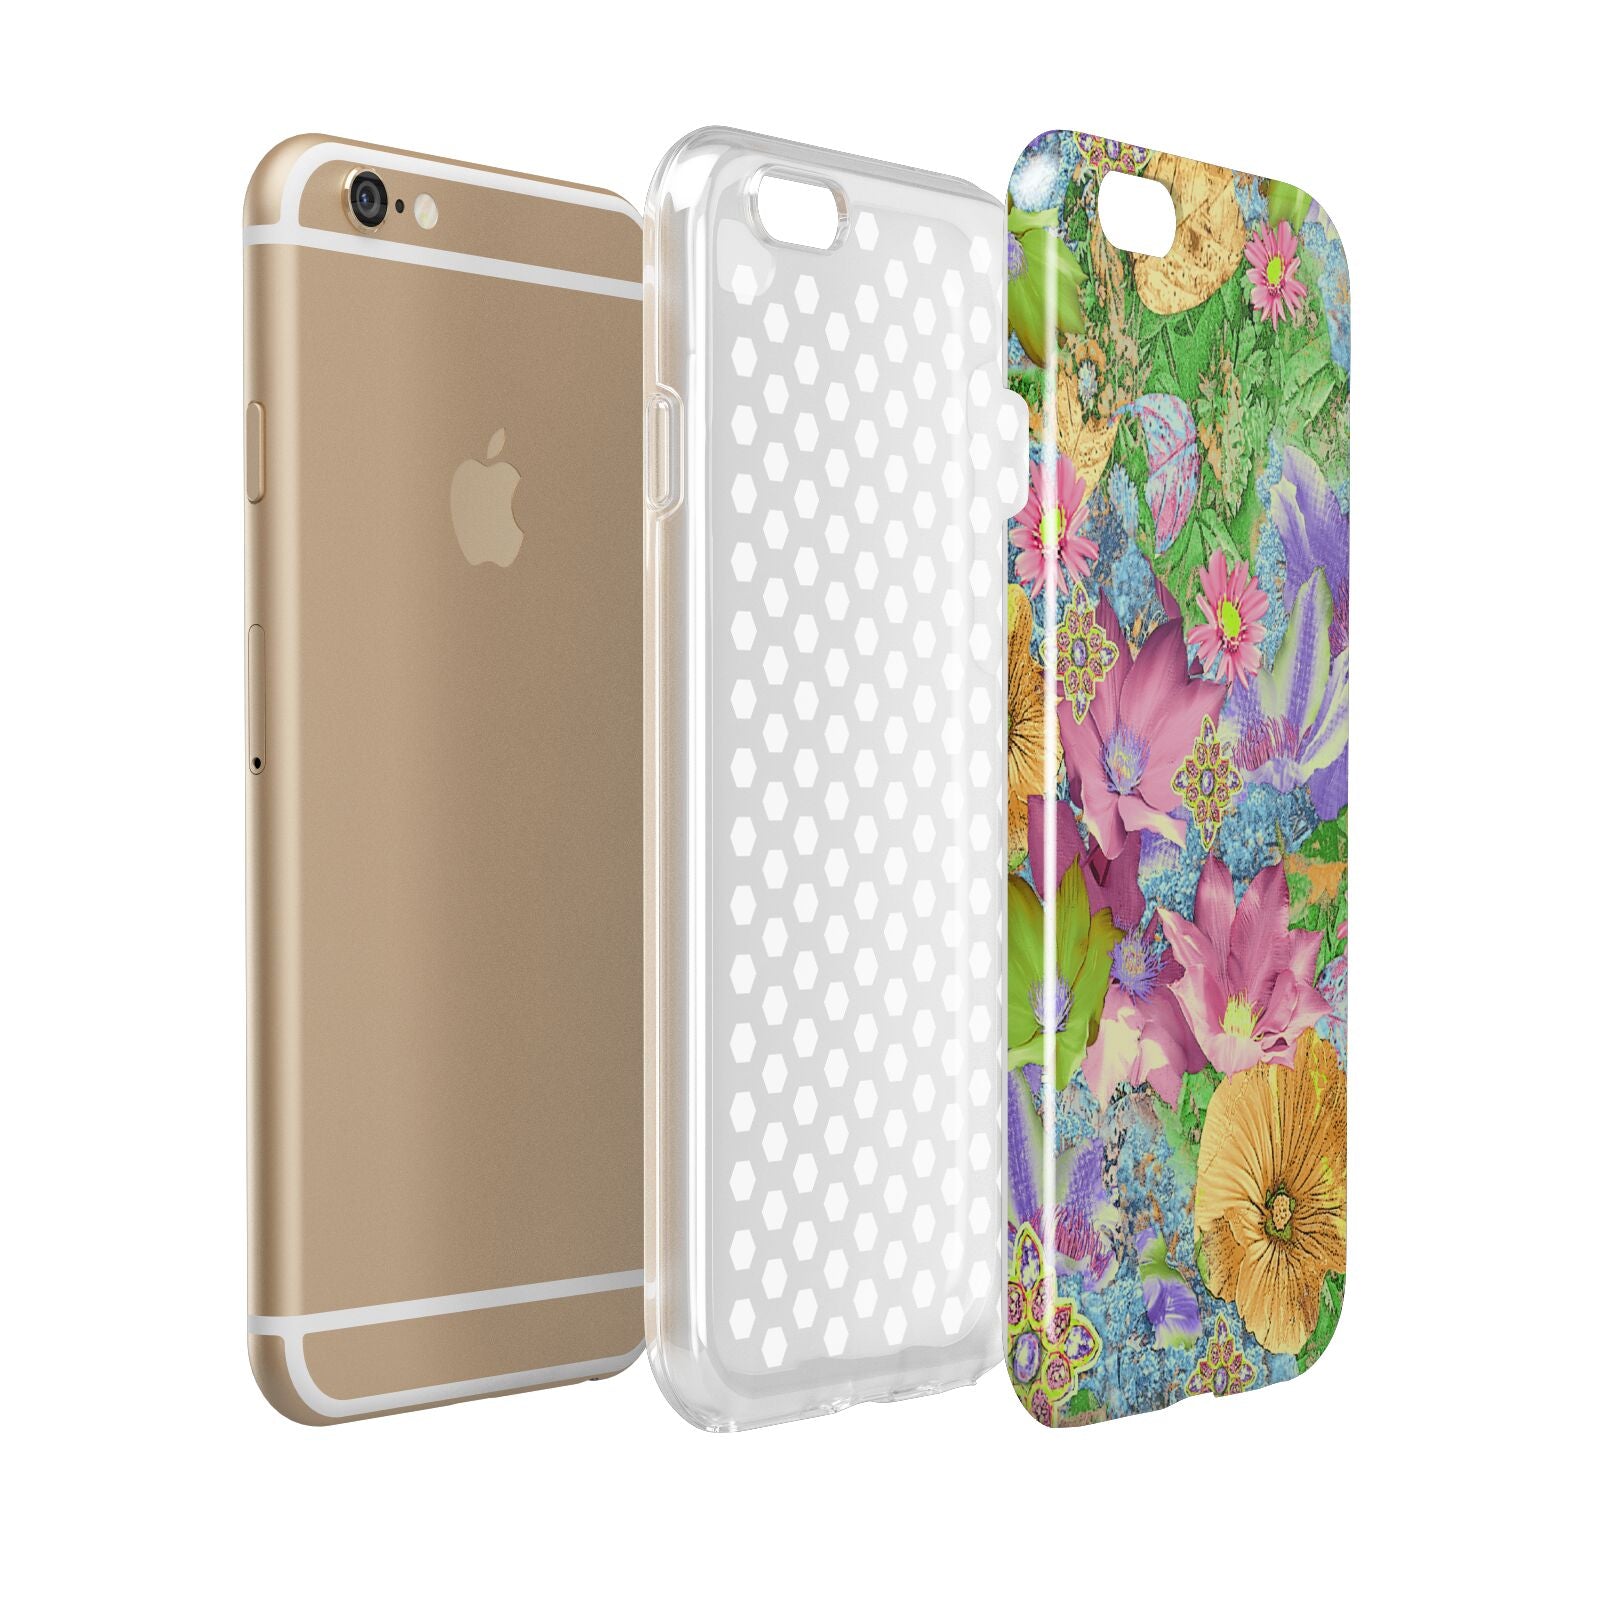 Vintage Floral Pattern Apple iPhone 6 3D Tough Case Expanded view